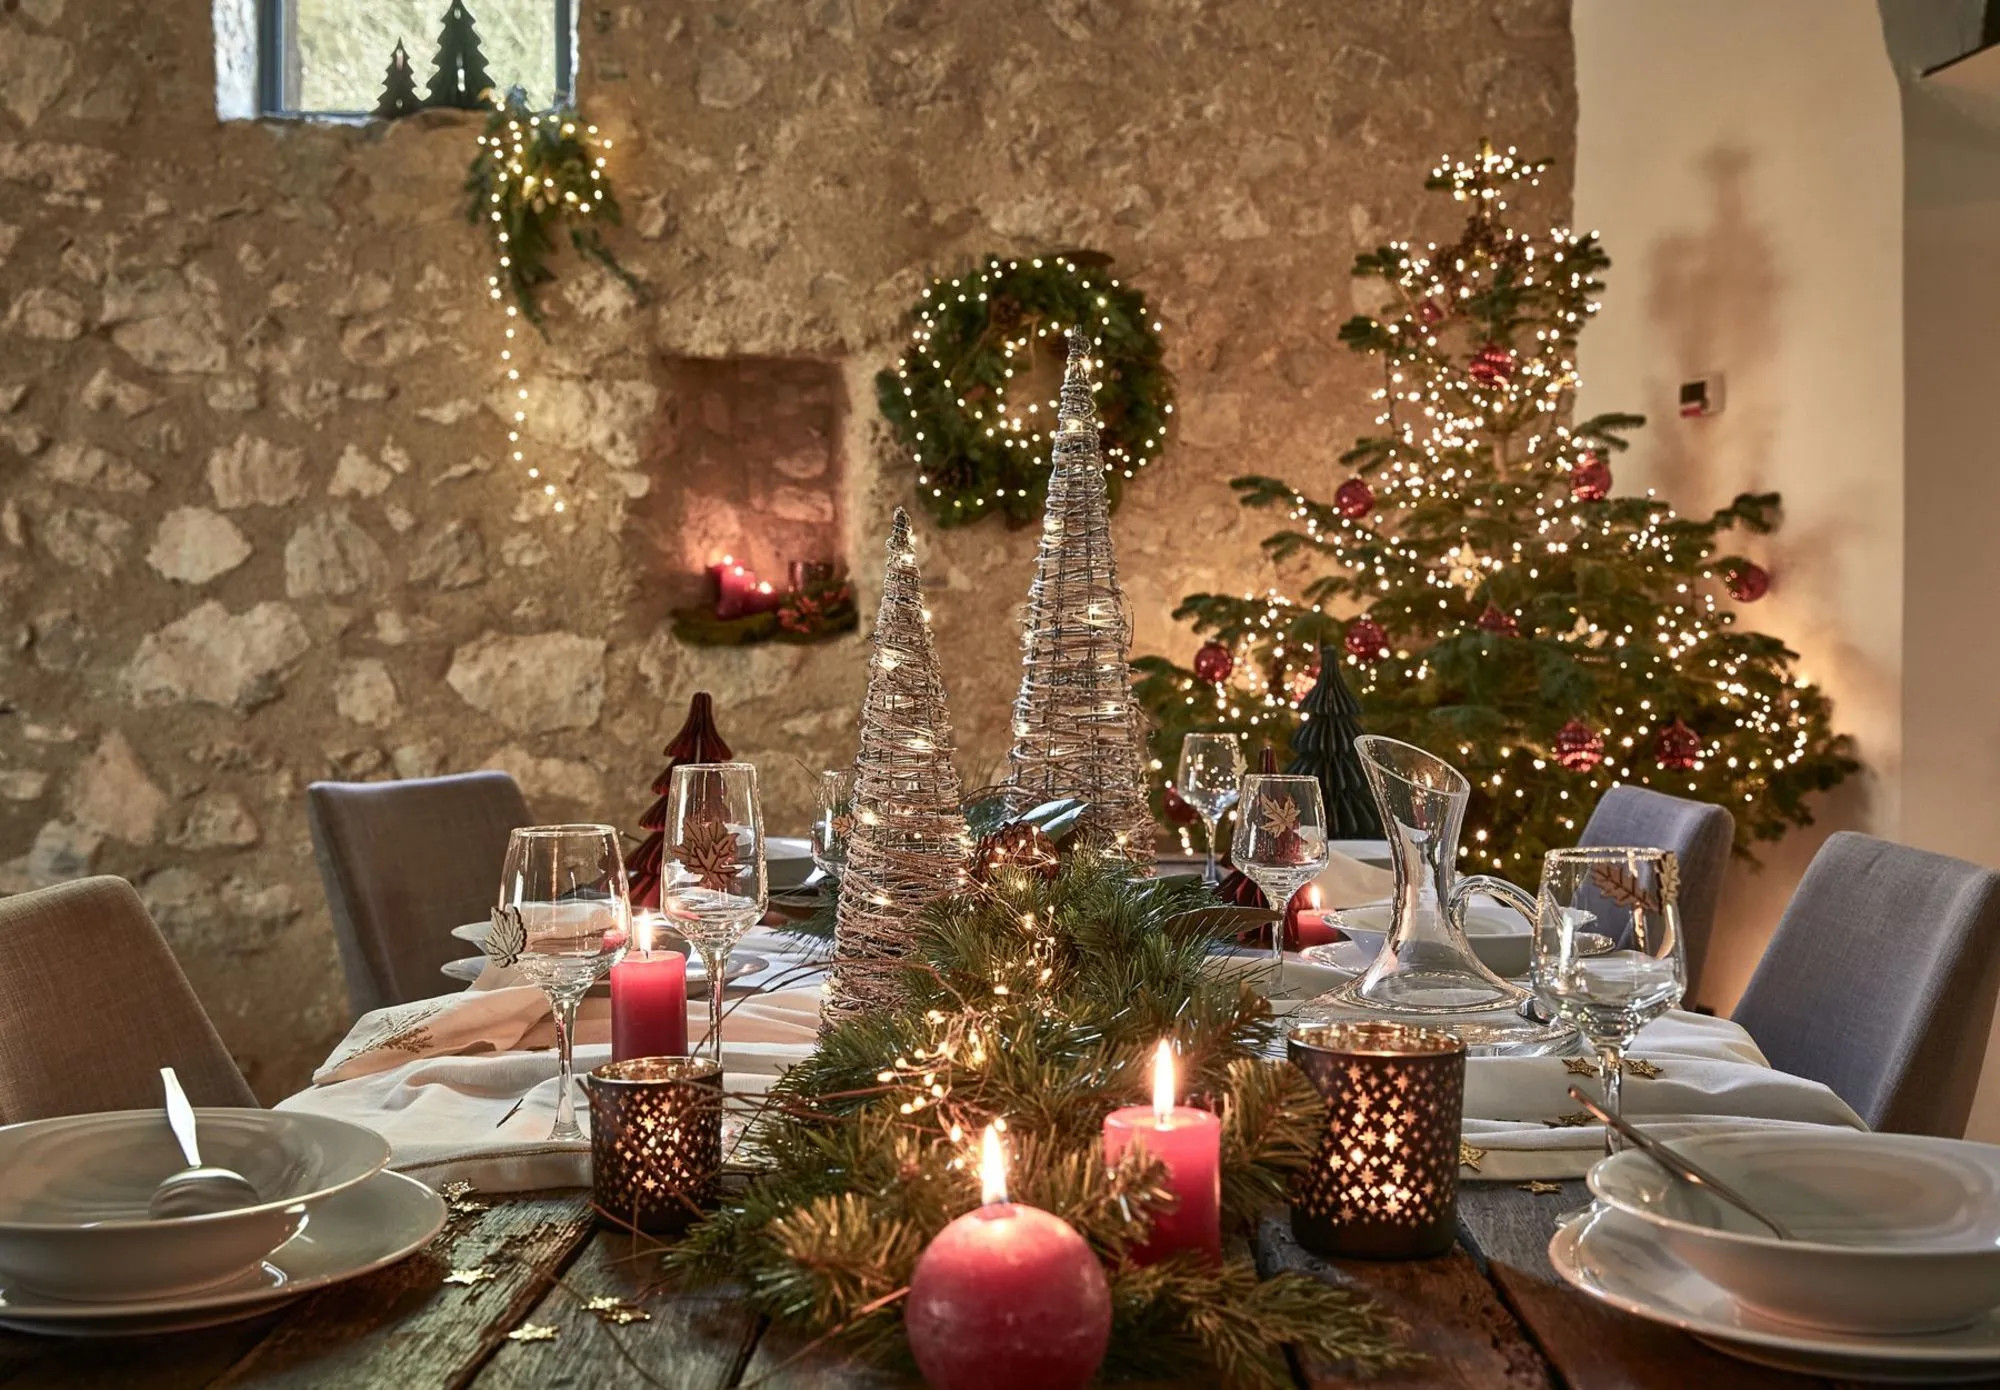 Les illuminations de Noël - Décoration - Noël - Déco - Maison - Alinéa